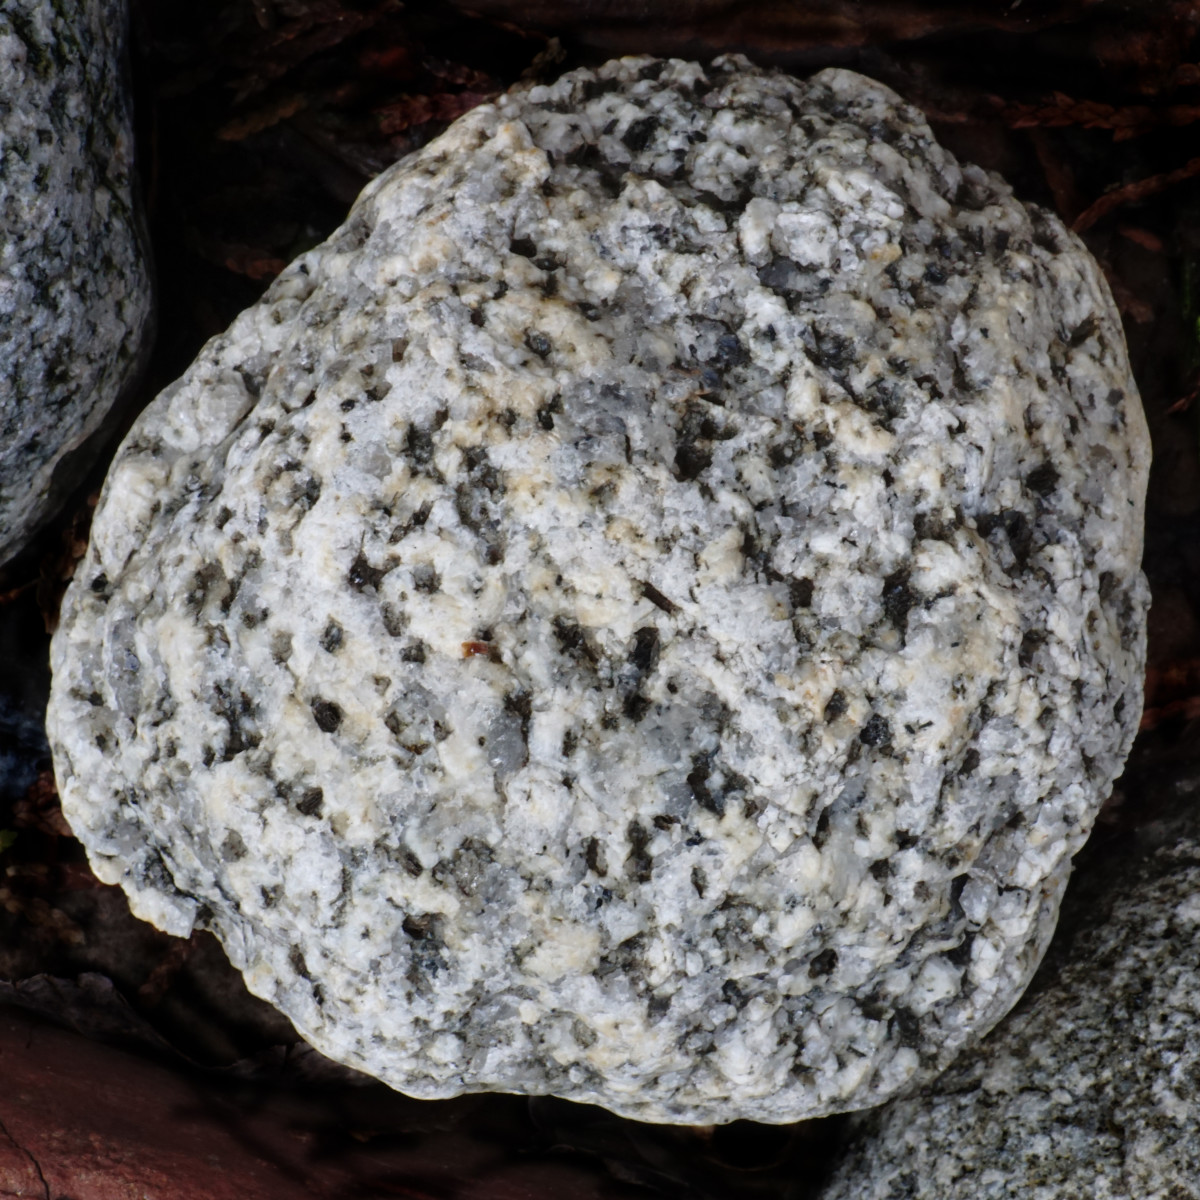 Pegmatite, a Lake Michigan Beach Stone